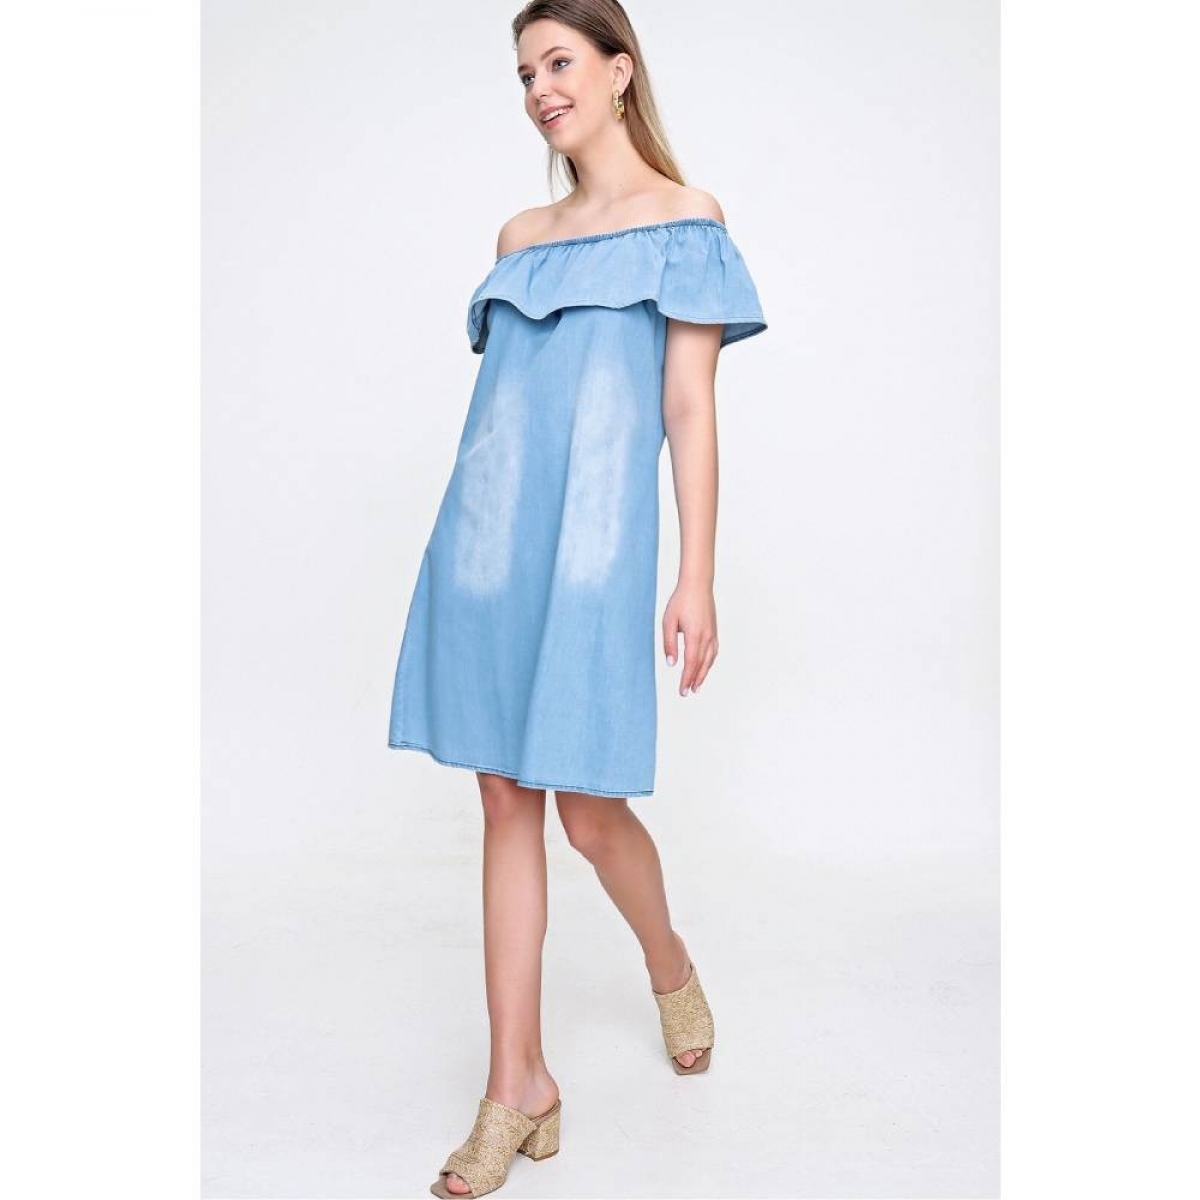 Flo Kadın Açık Mavi Omuz Açık Kısa Elbise. 5